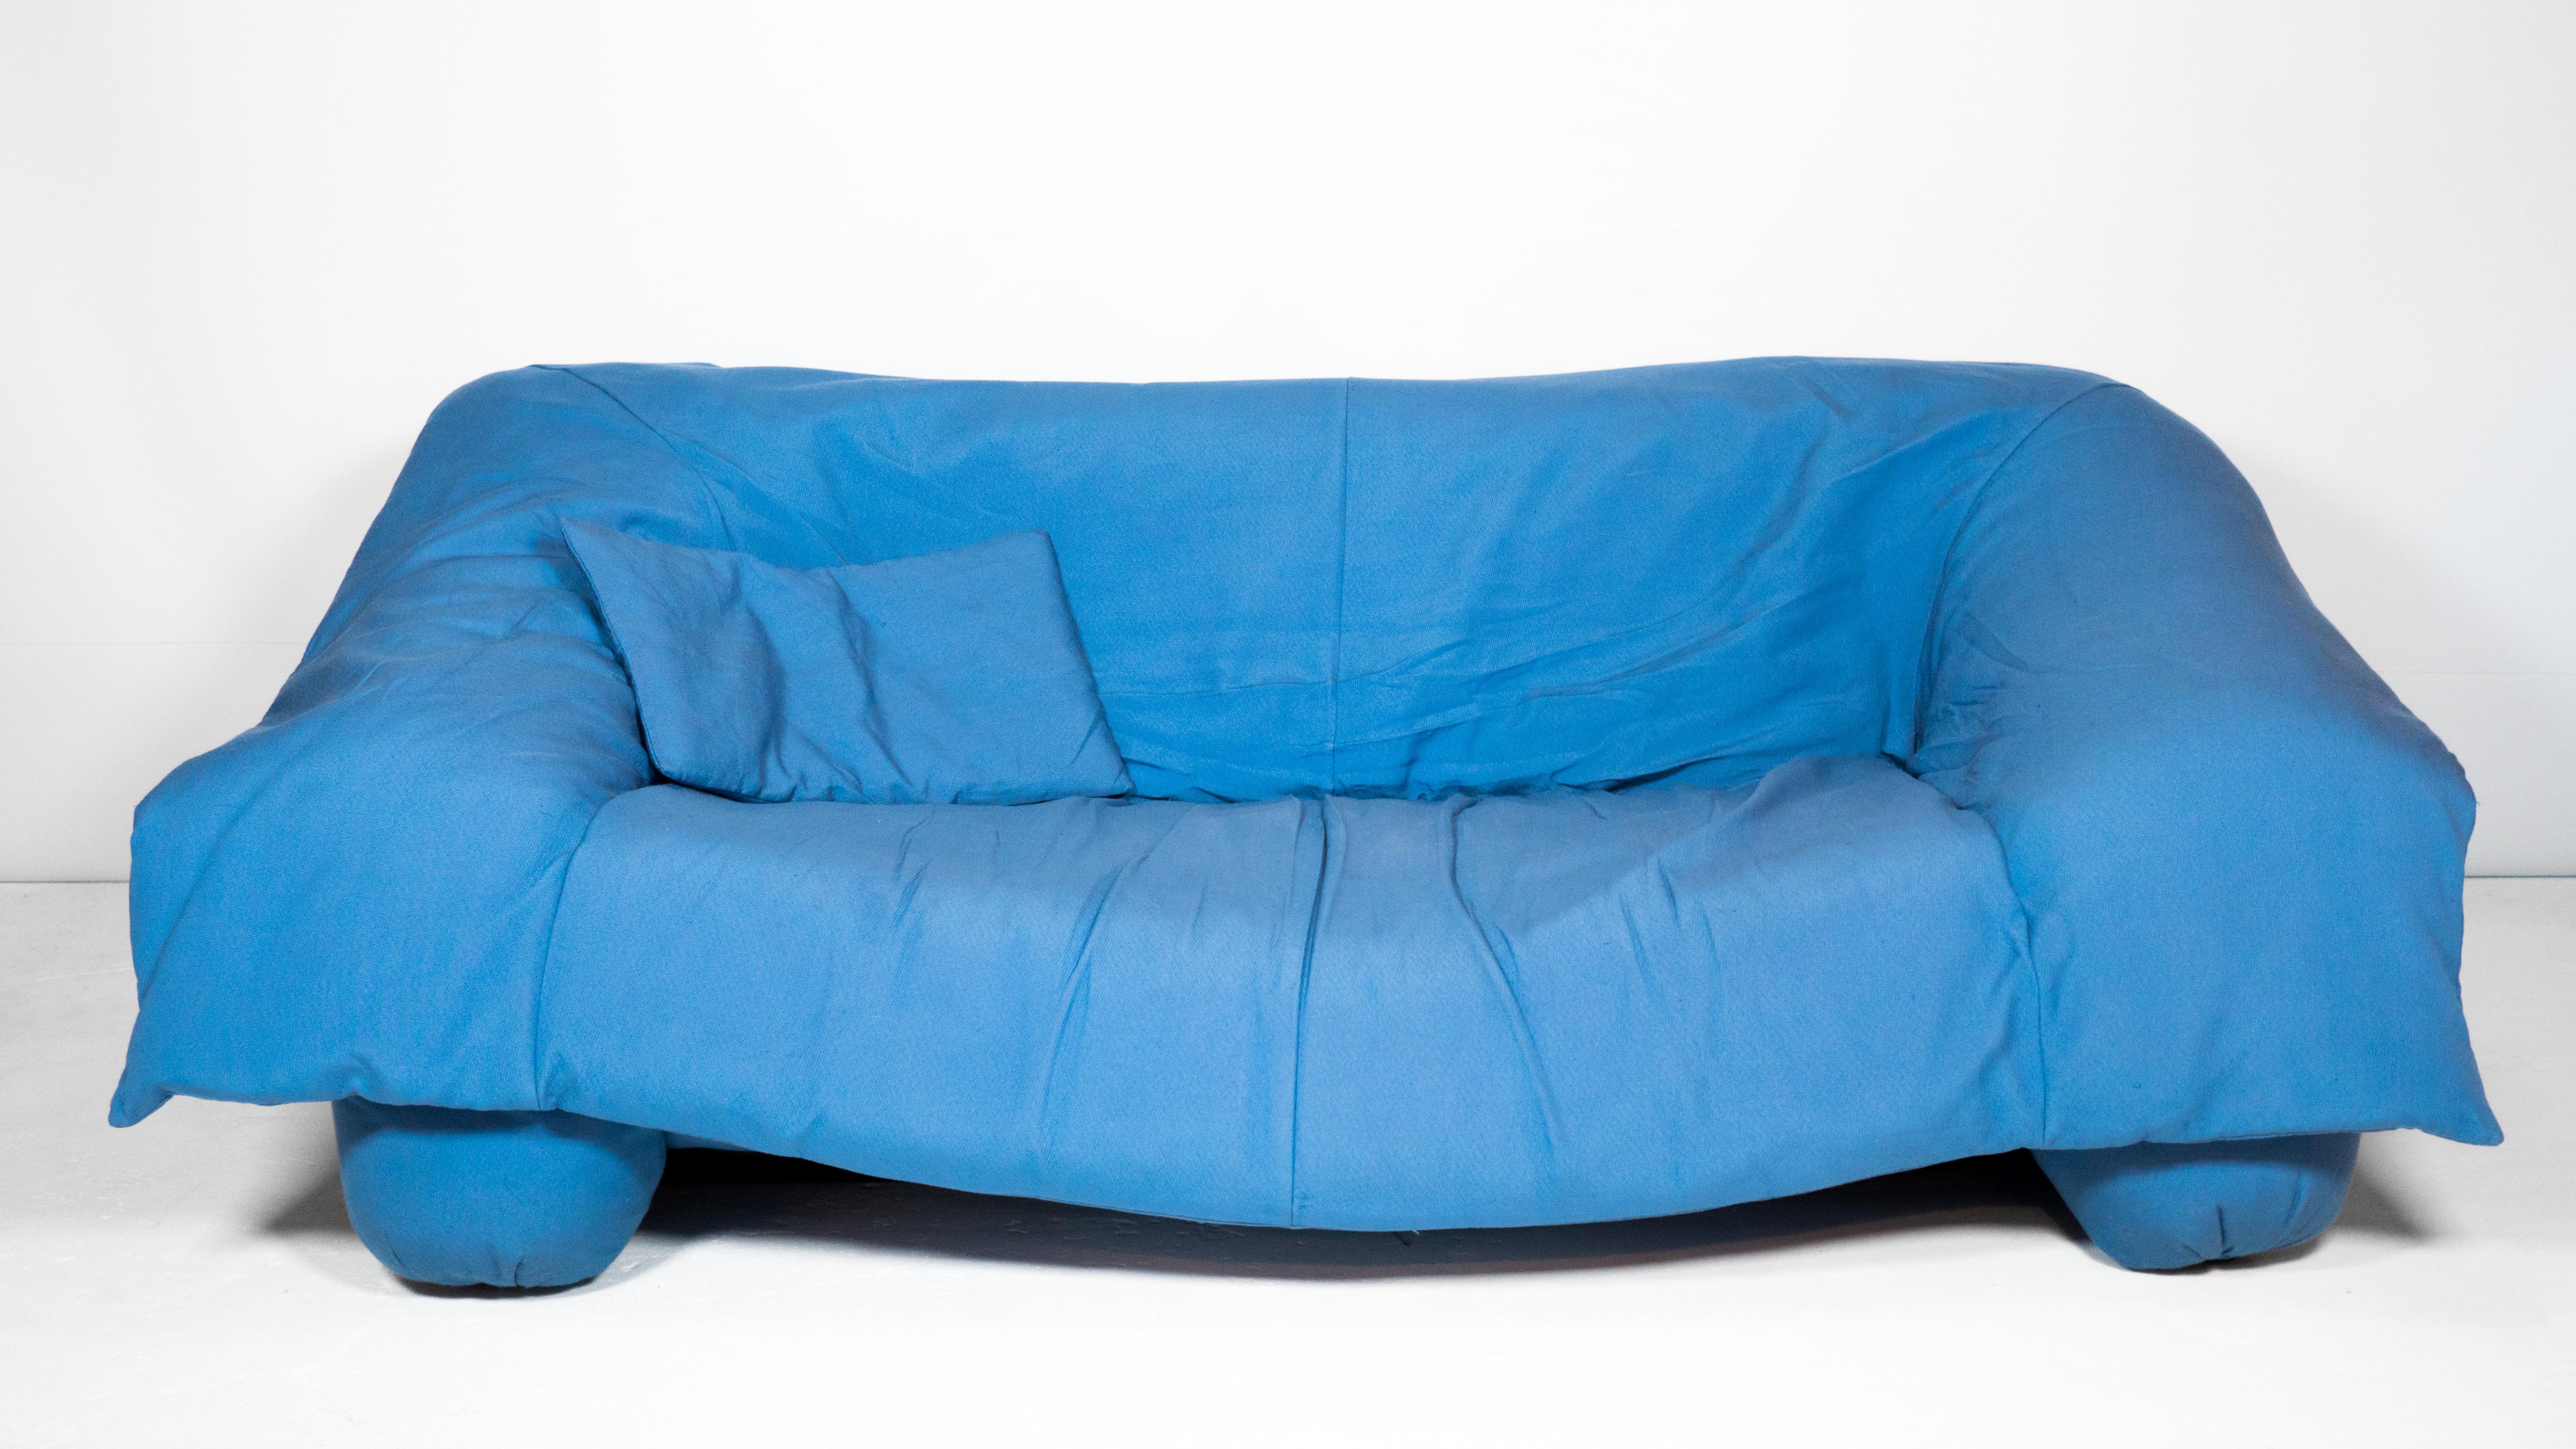 Sofa 'Flou Flou', entworfen von dem bekannten italienischen Trio Jonathan De Pas, Donato D'Urbino und Paolo Lomazzi für Ligne Roset, um 1988. Umhüllt von der originalen weichen blauen Polsterung mit passendem Kissen. Ein herrlich verspieltes Design,